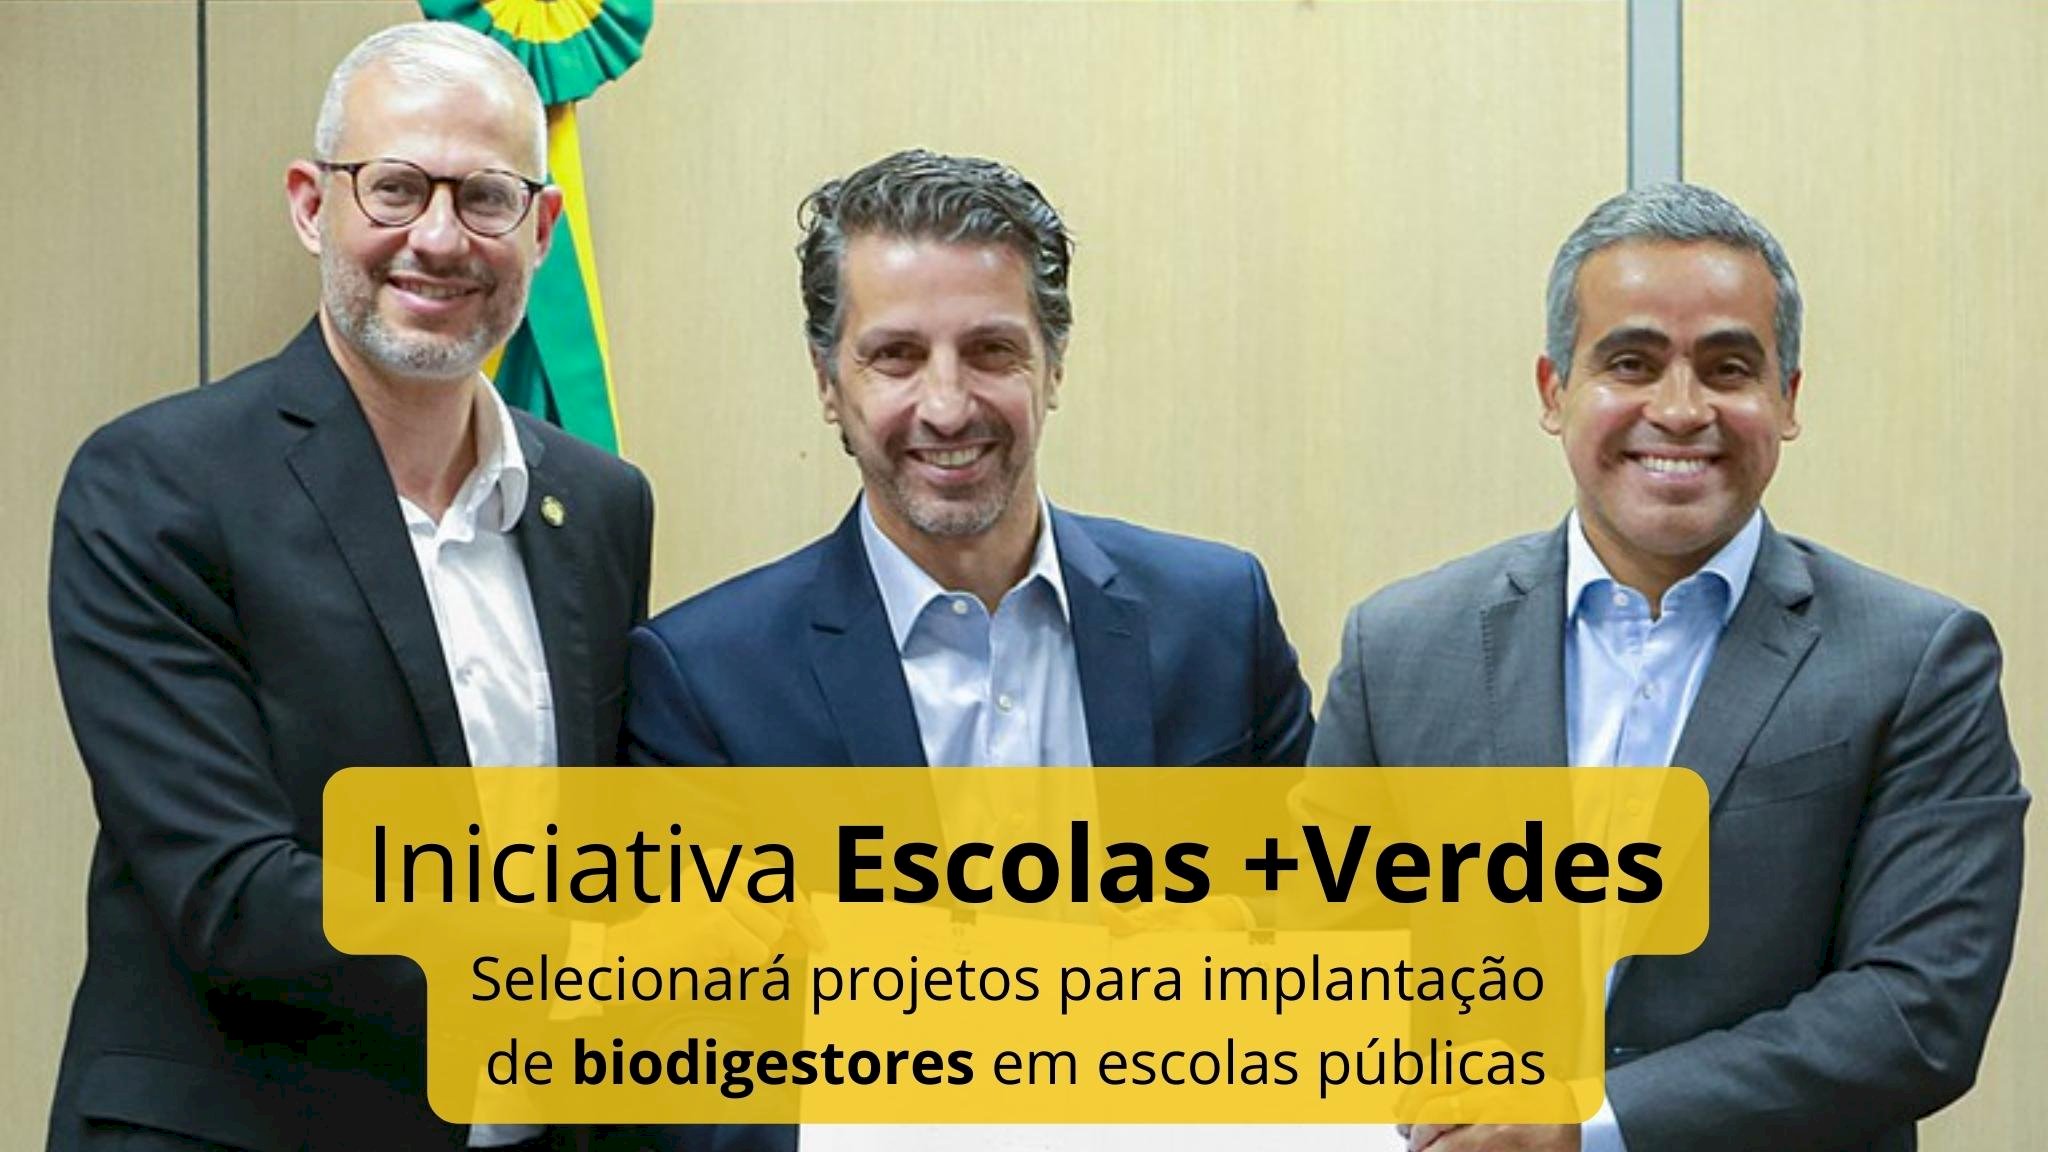 Iniciativa Escolas +Verdes selecionará projetos para implantação de biodigestores em escolas públicas